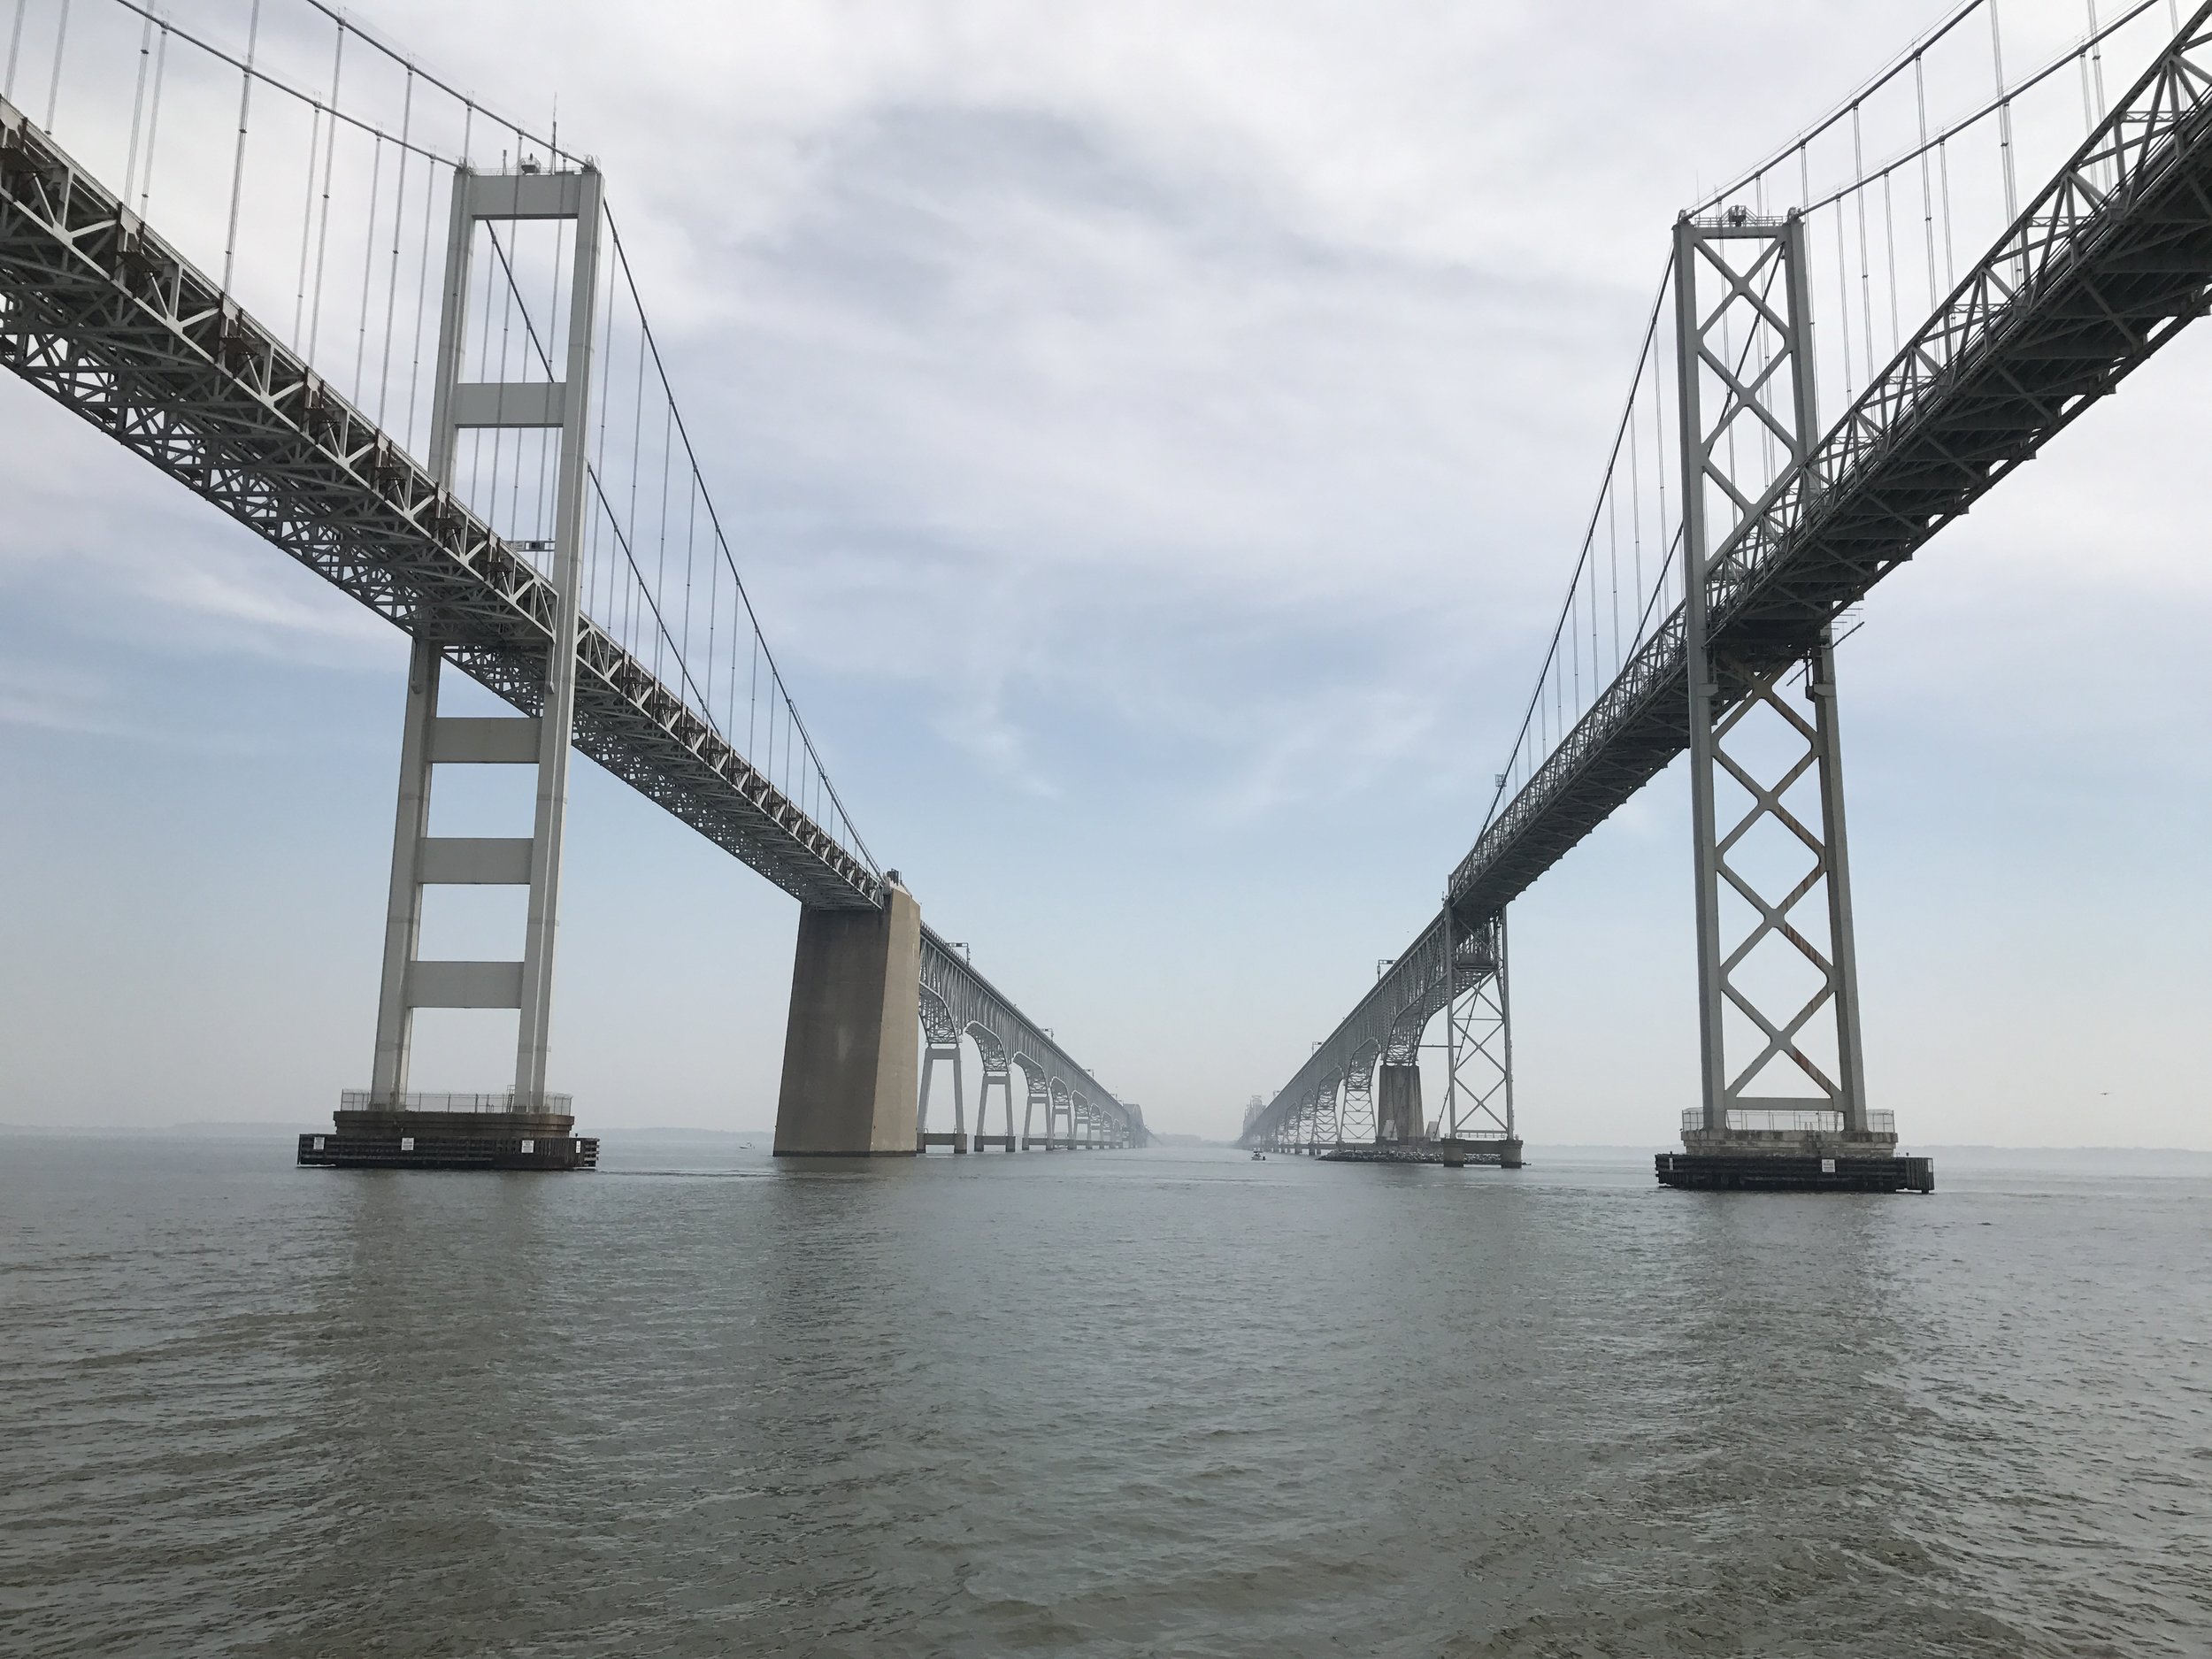 View of the Chesapeake Bay Bridge